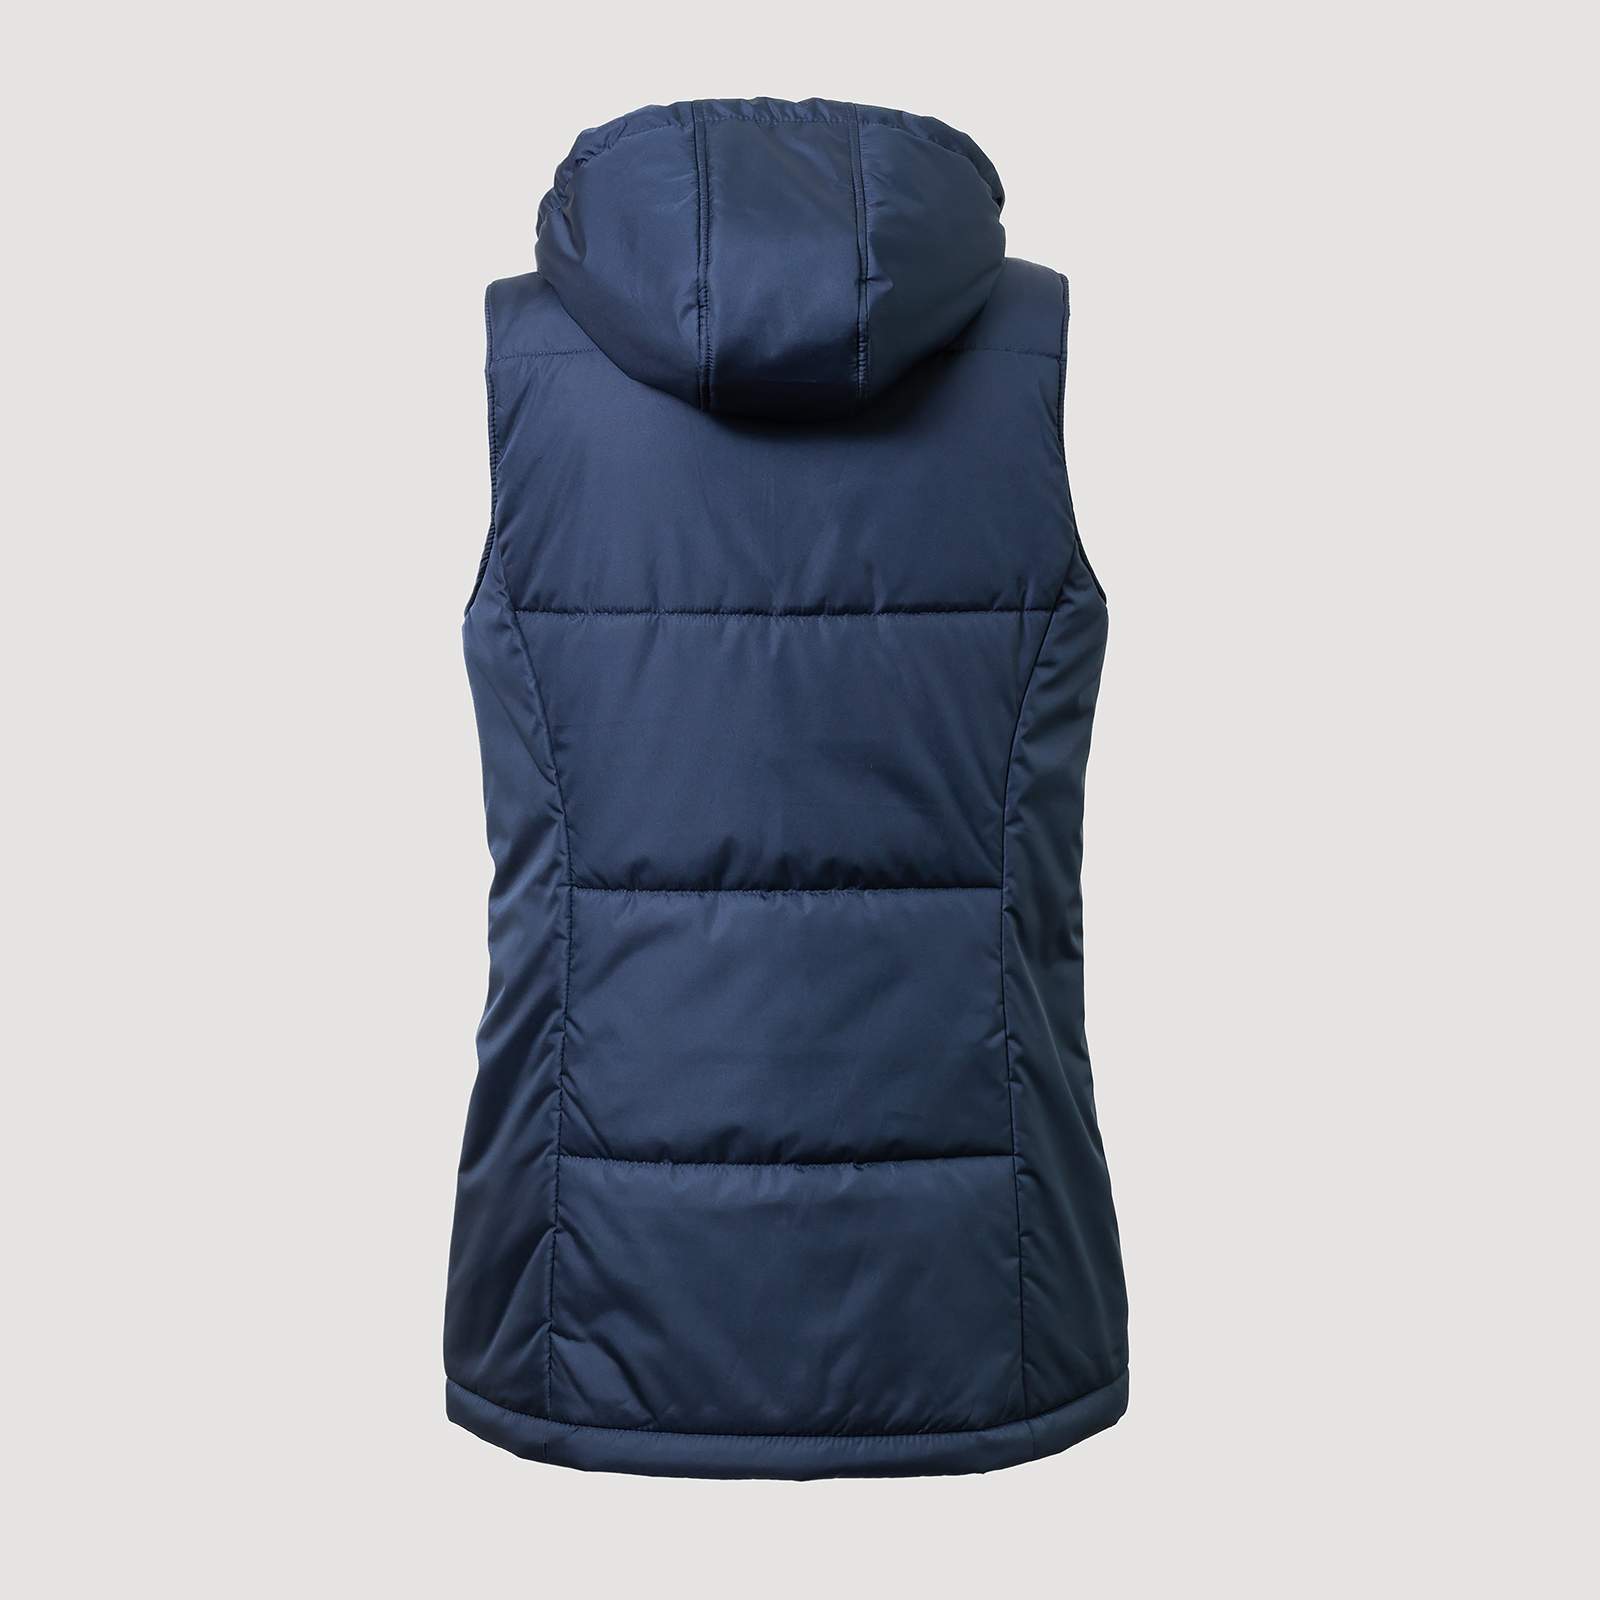 Купить женский утепленный жилет Elegance Winter Vest Original